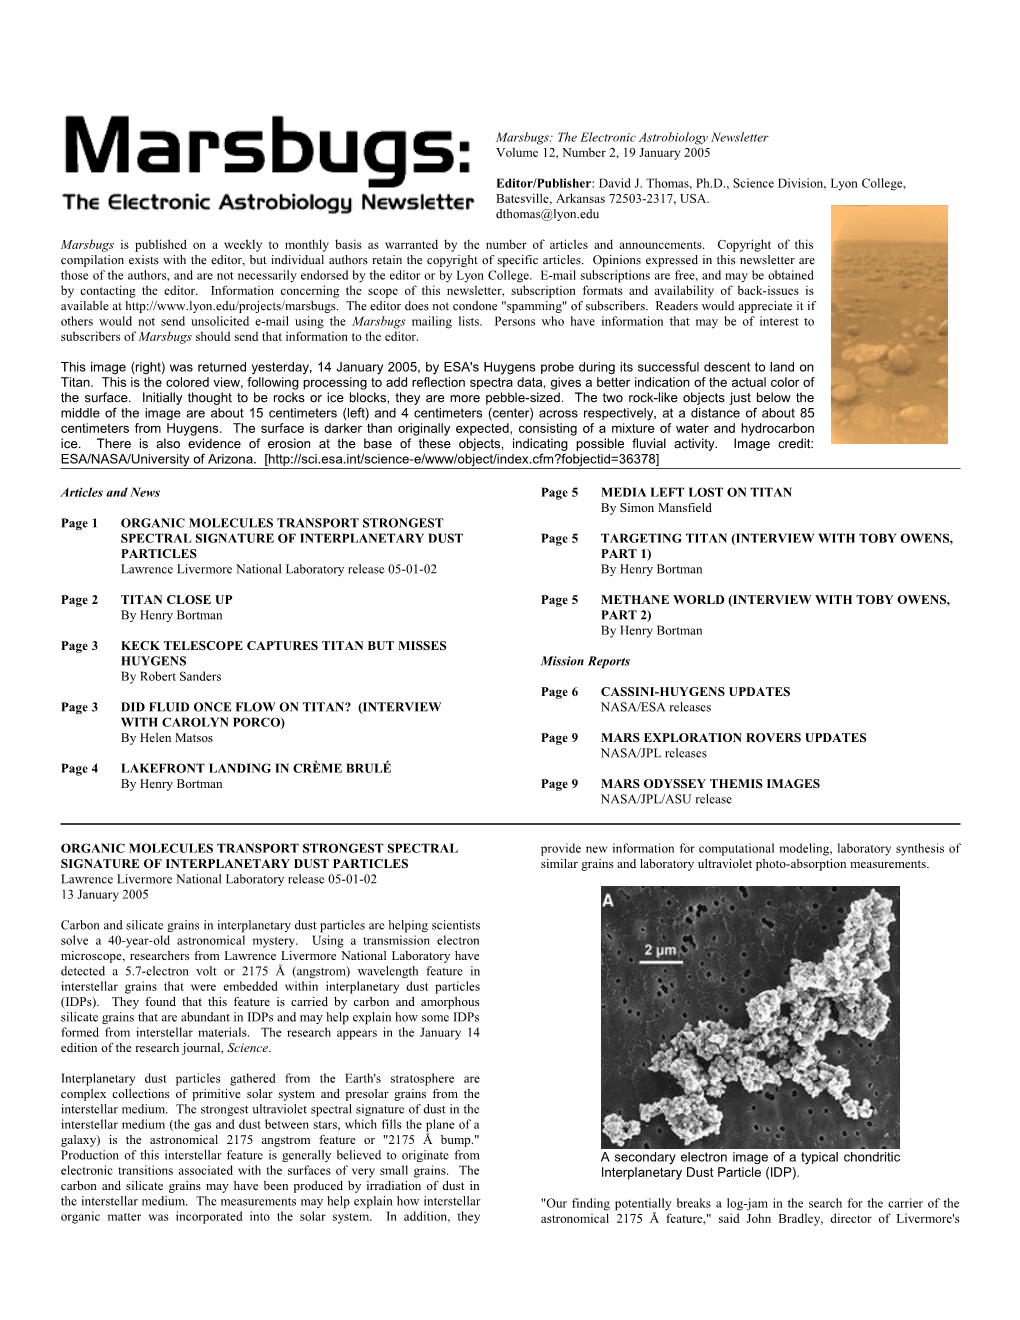 Marsbugs Vol. 12, No. 2